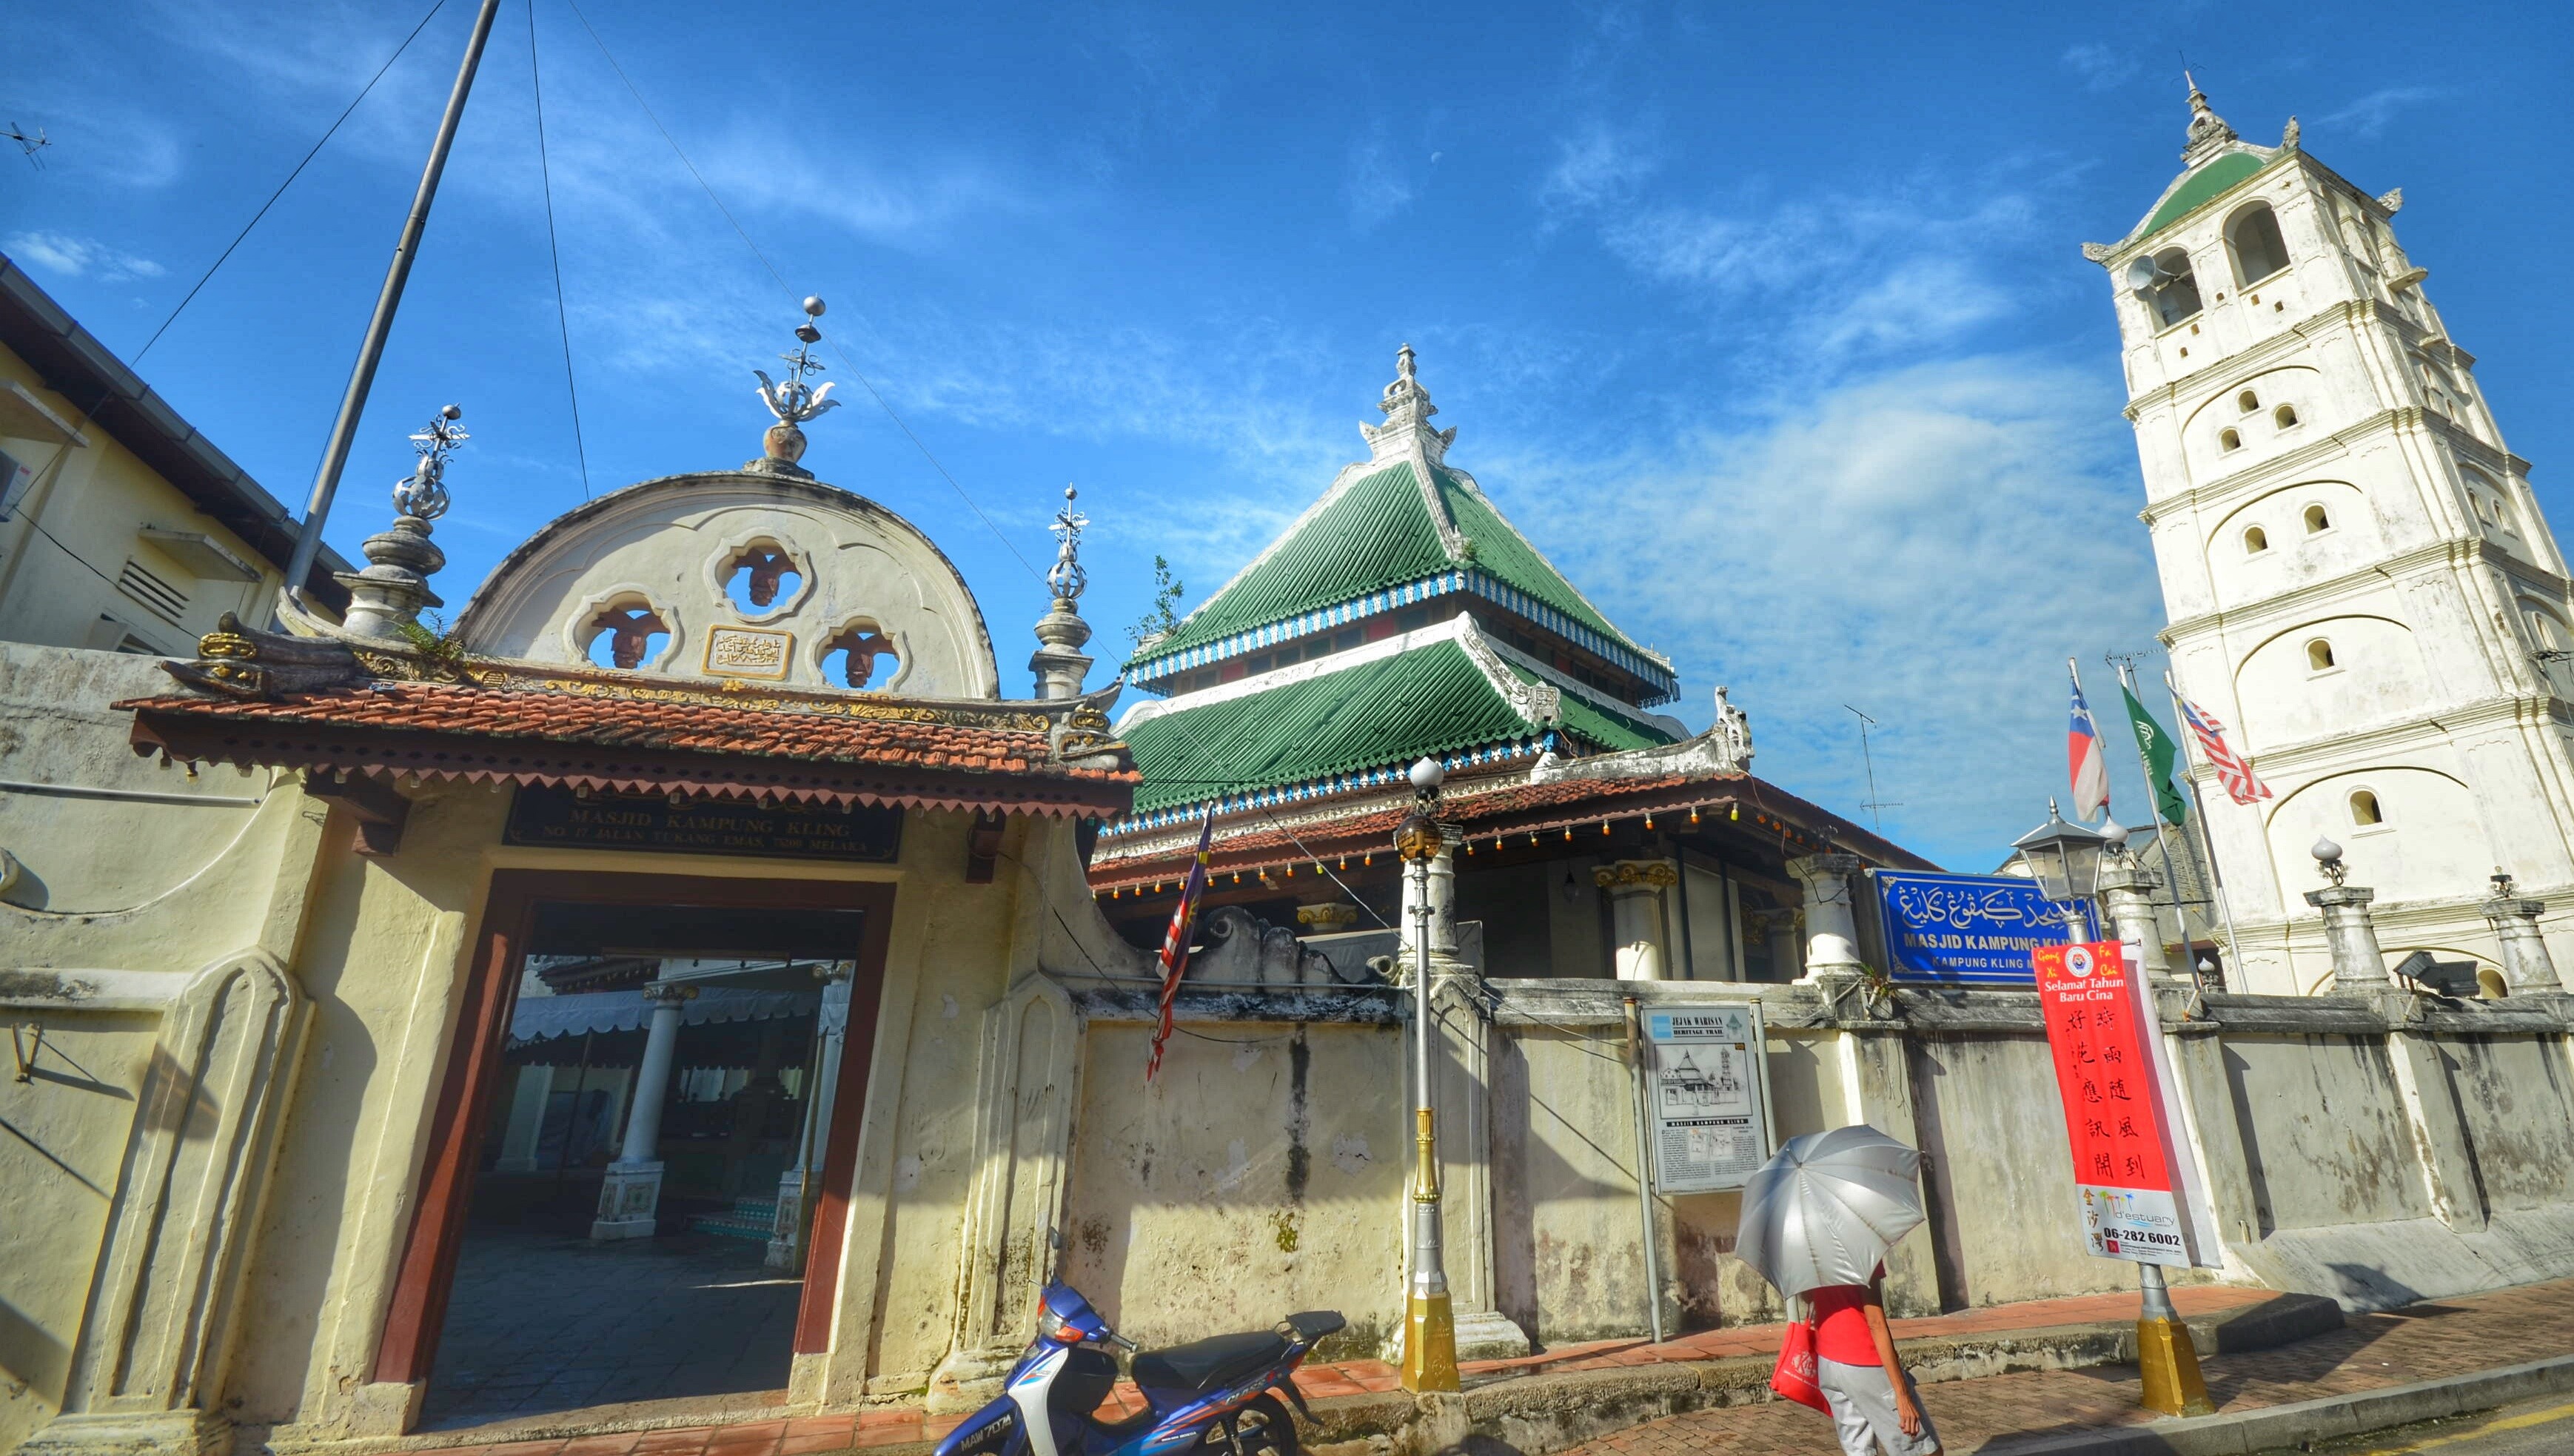 مسجد كامبونج كيلنغ ملاكا ماليزيا